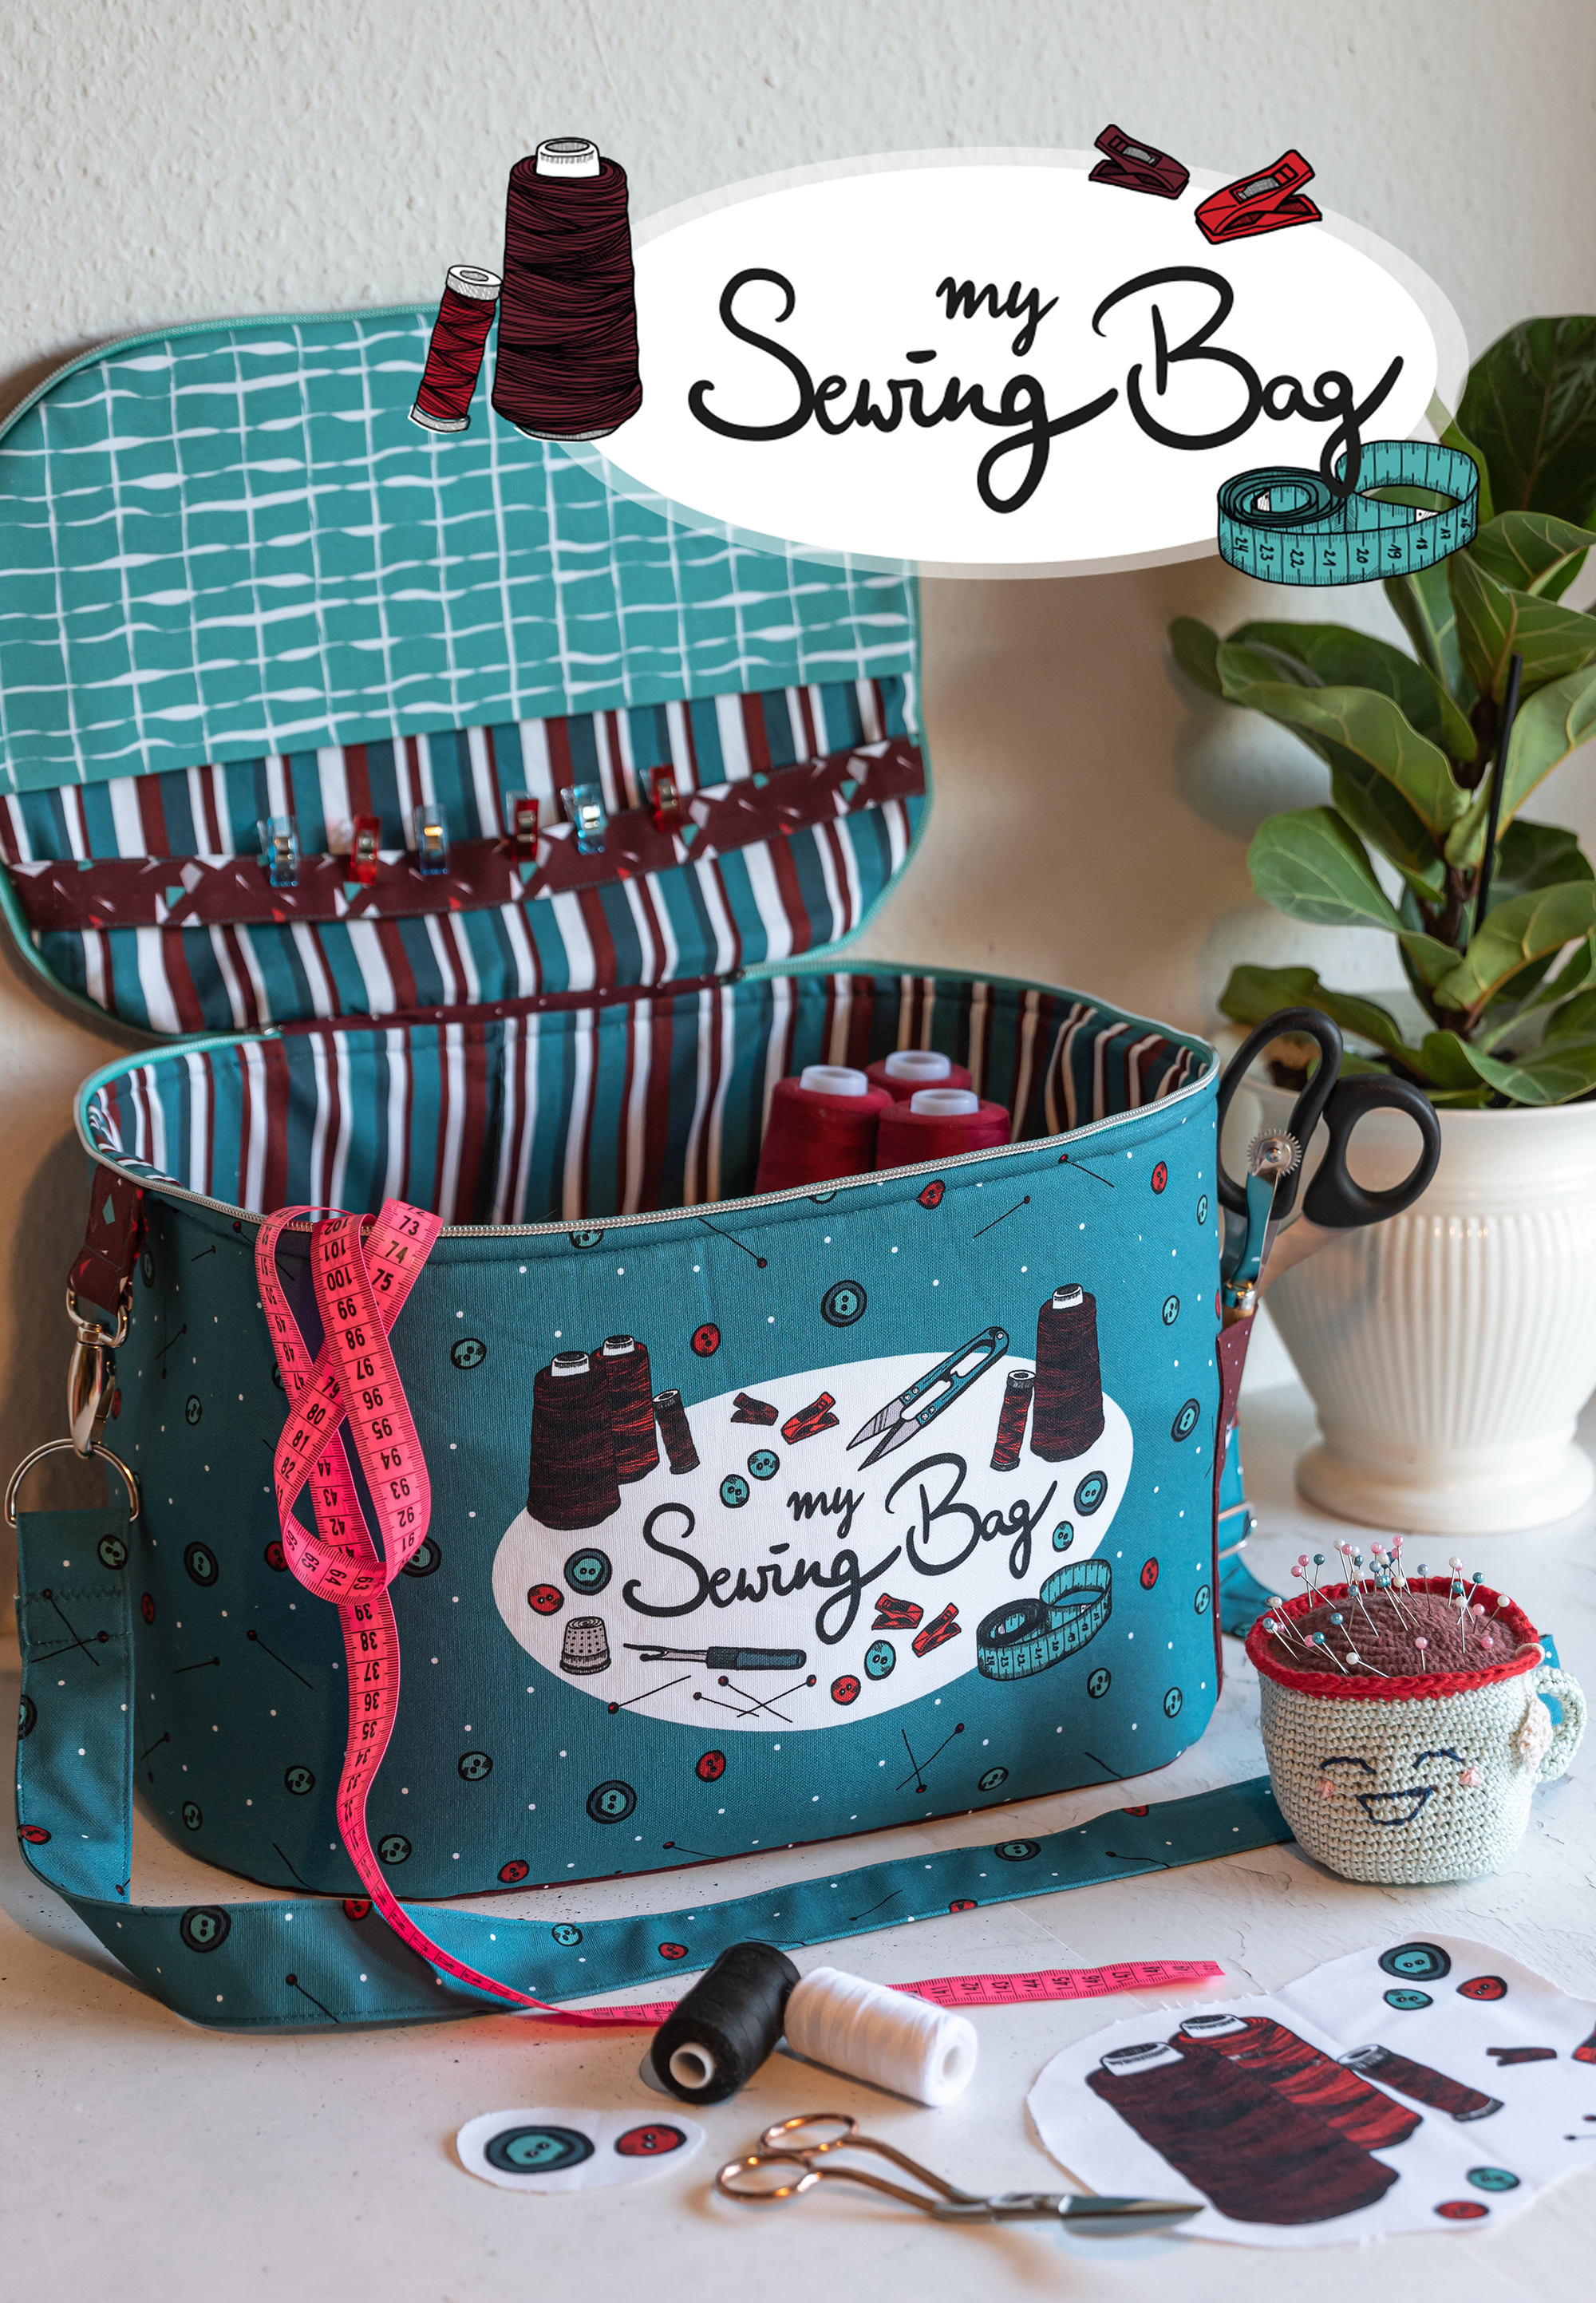 My Sewing Bag Nähutensilien-Tasche / DIY Panel in blau-ocker